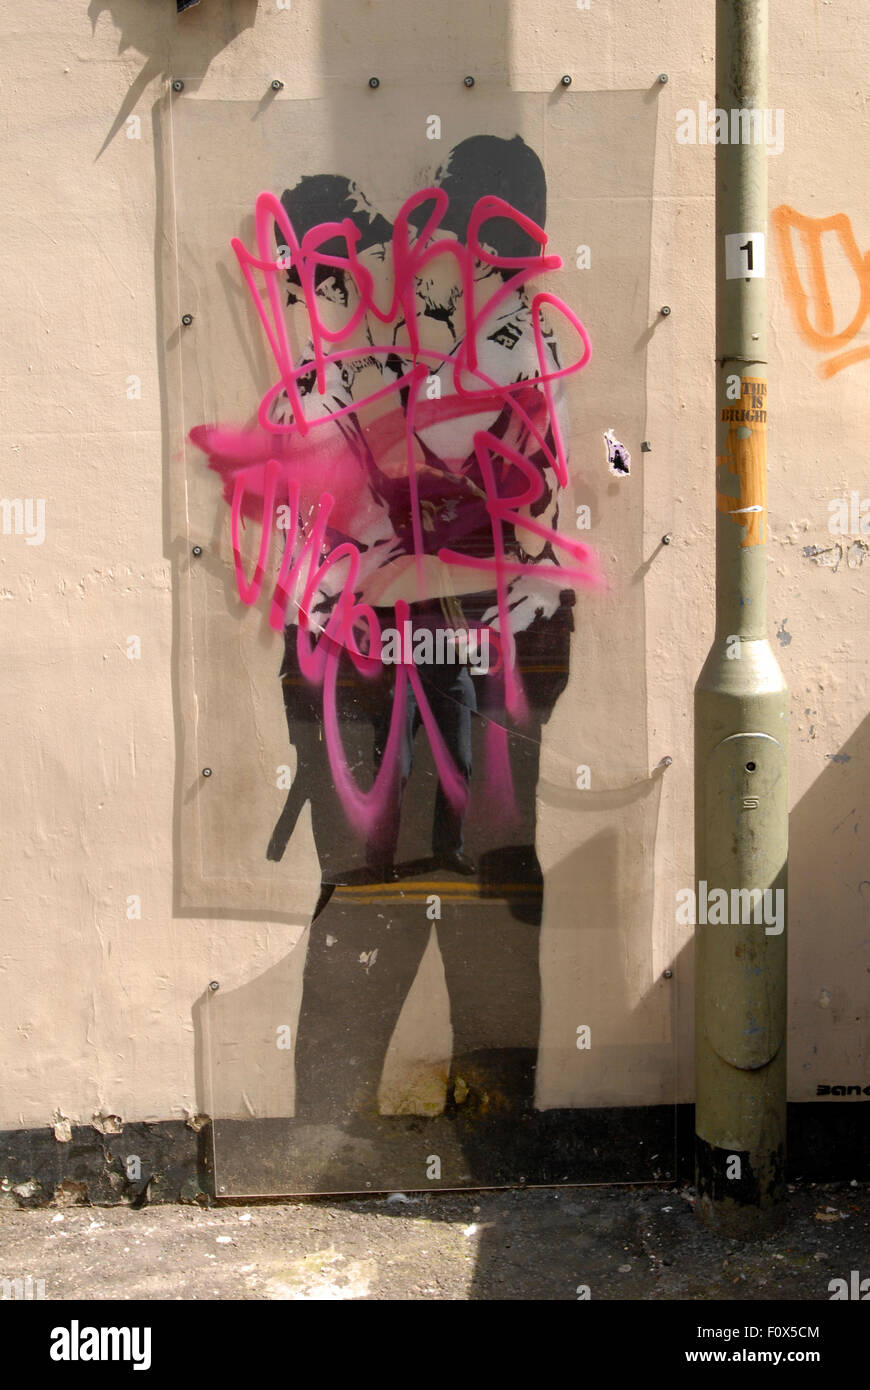 Etiquetas Graffiti rociados sobre la pantalla de plástico cubriendo el famoso Banksy besan Peroles de graffiti de dos besos gay policías en el lado del Prince Albert pub cerca de la estación de tren de Brighton. Foto de stock